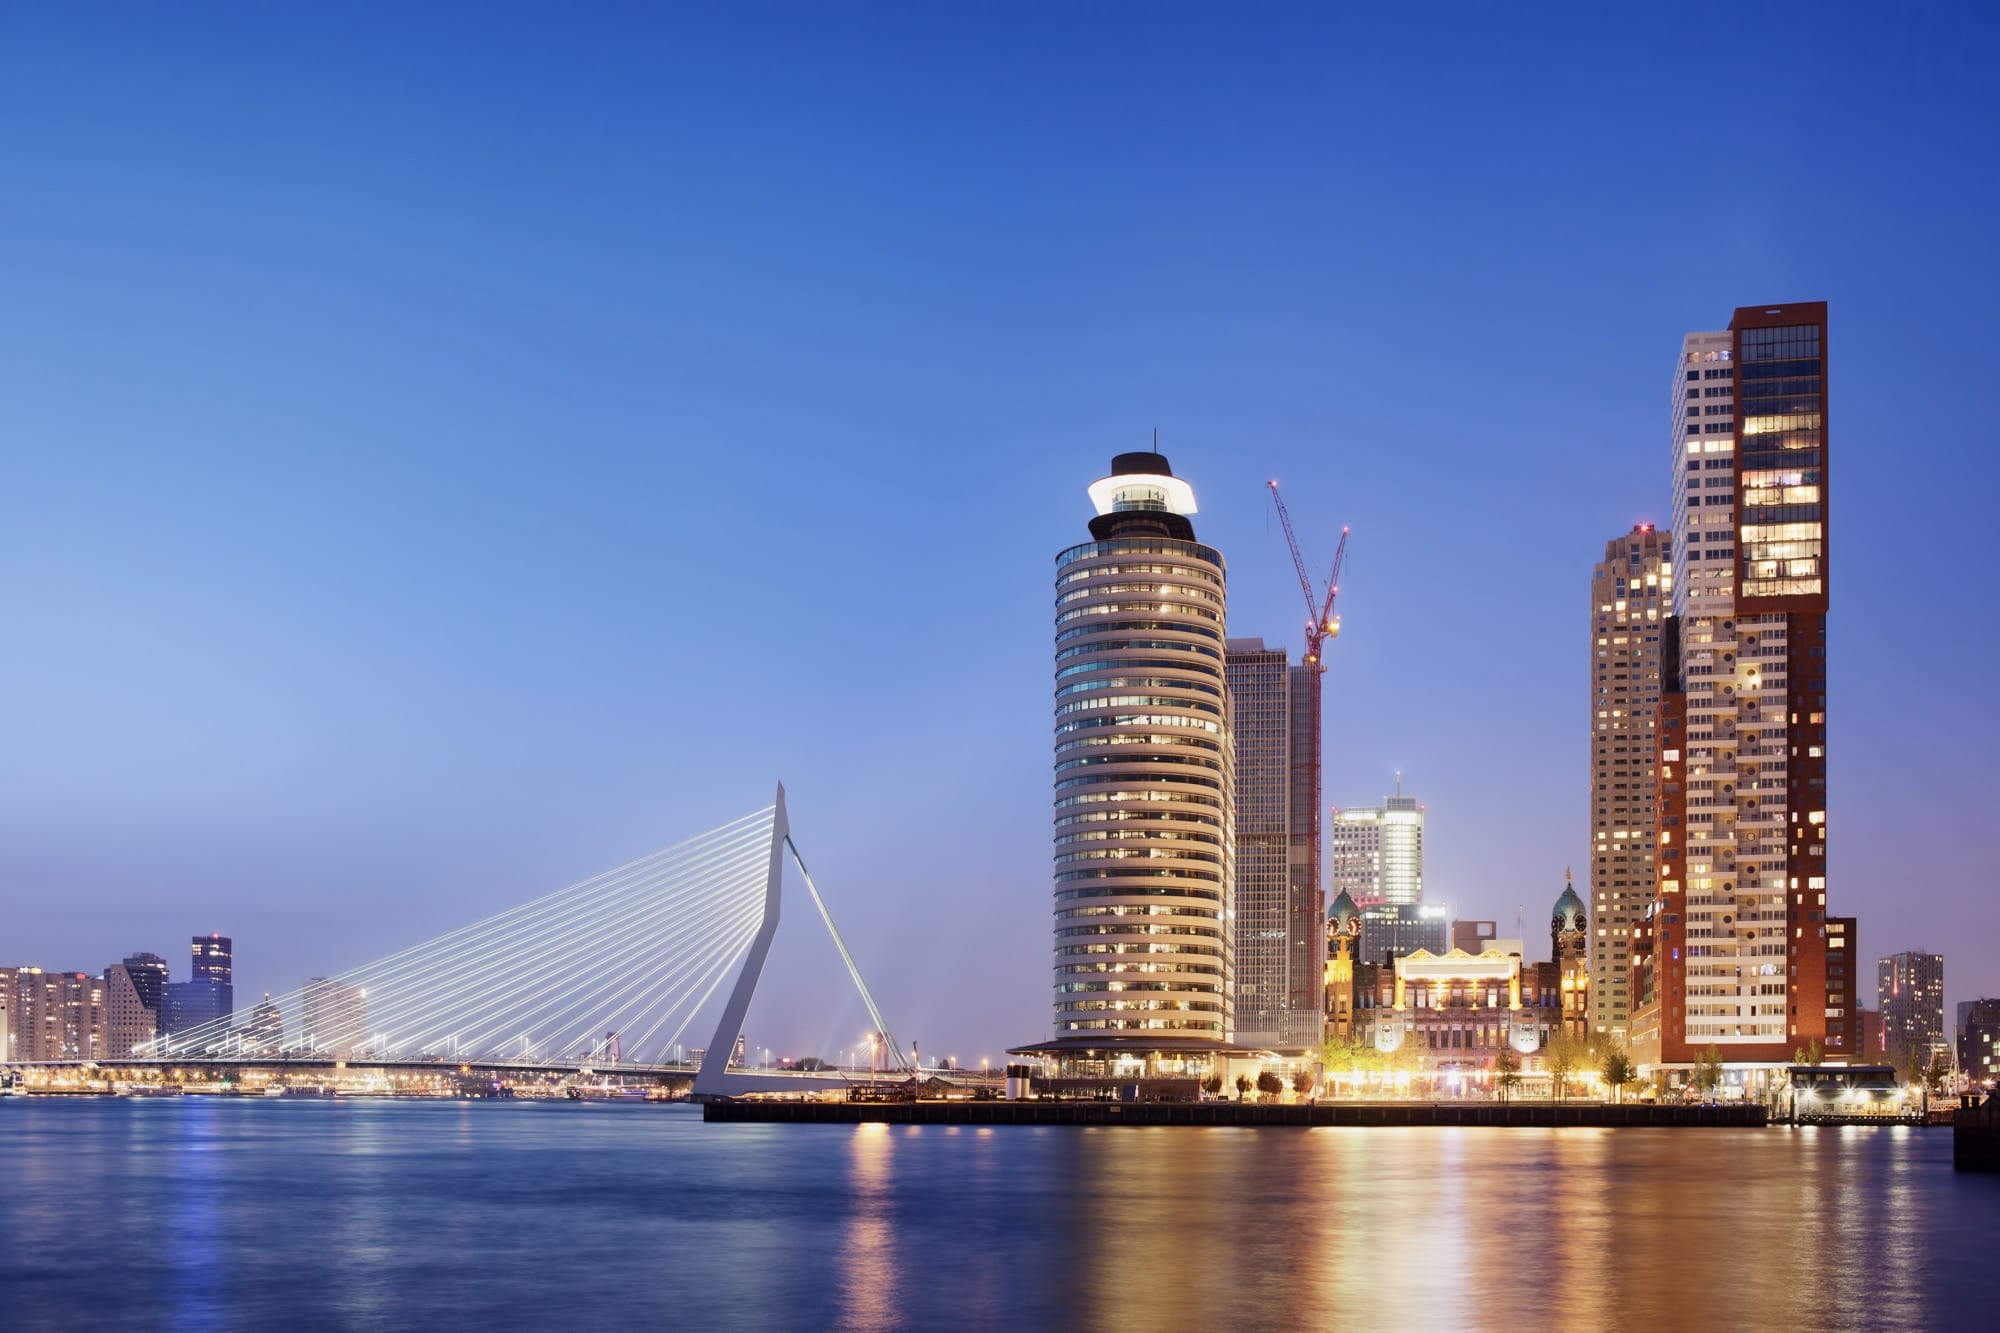 Städtetrips Europa Destinationen: Rotterdam - Skyline bei Nacht